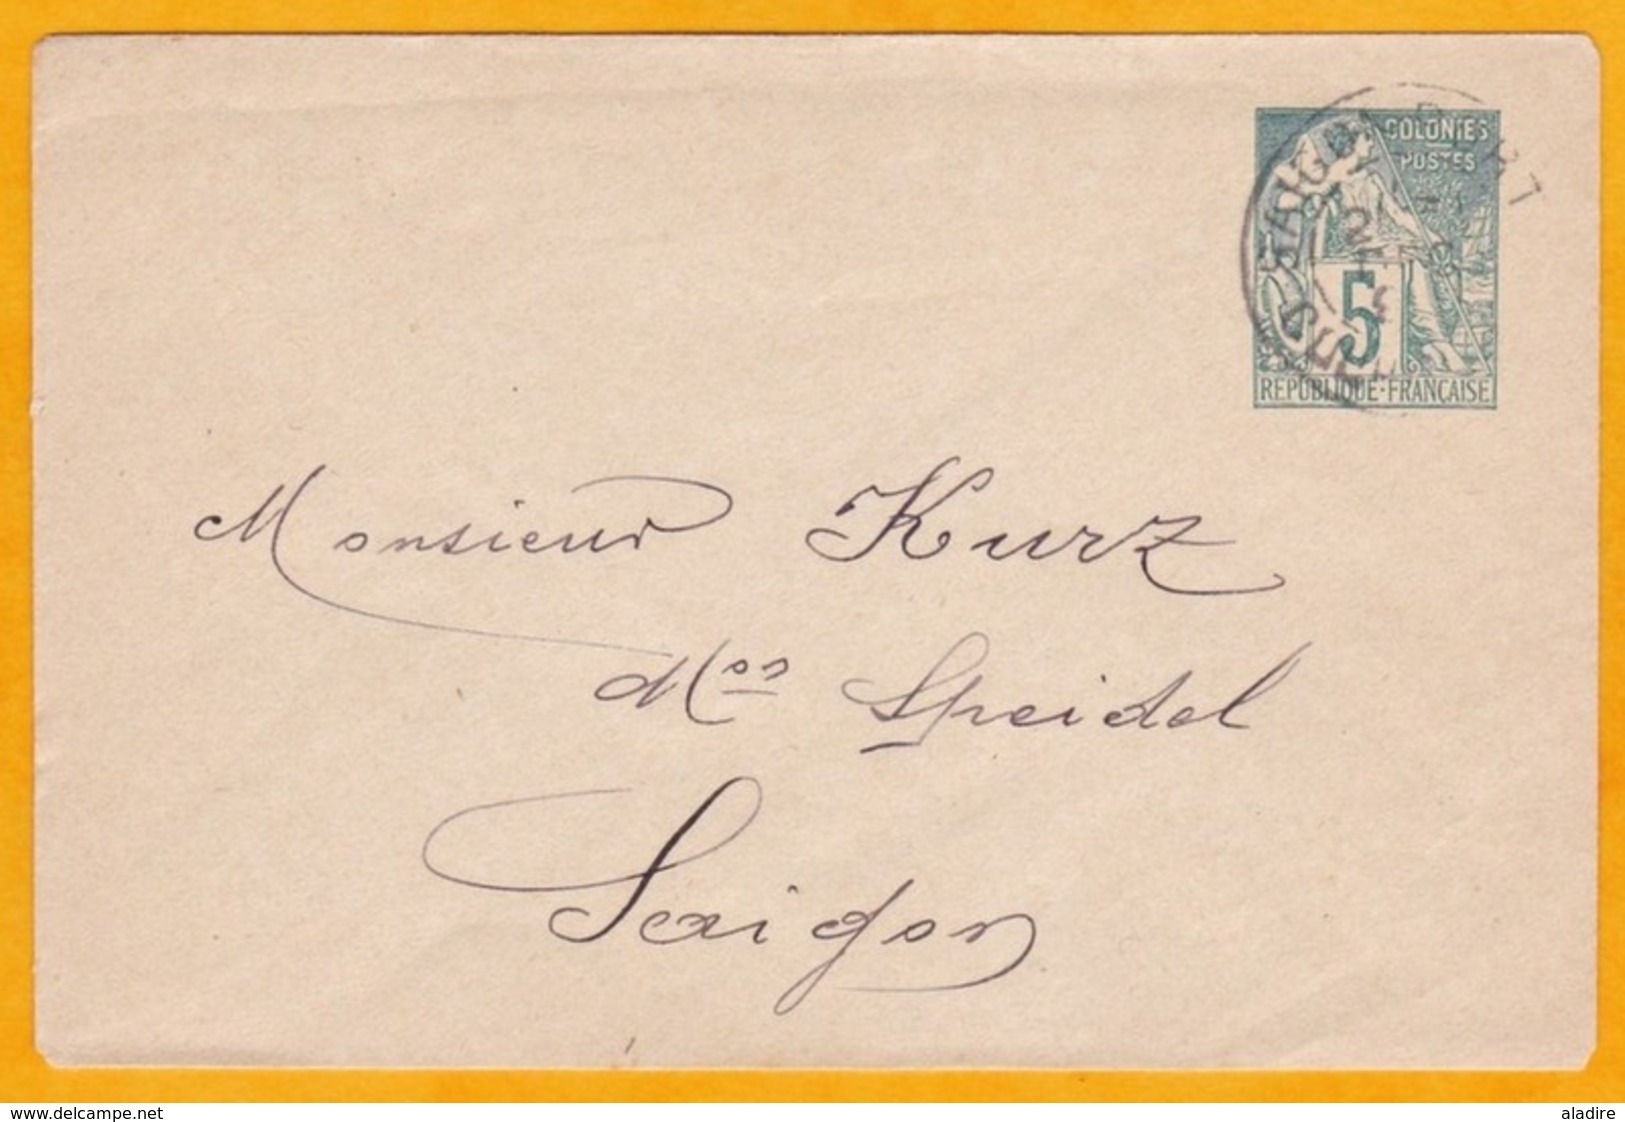 Circa 1895 - Entier Enveloppe Mignonnette Alphée Dubois 5 Centimes (tarif Local) De Saigon, Cochinchine En Ville - Covers & Documents